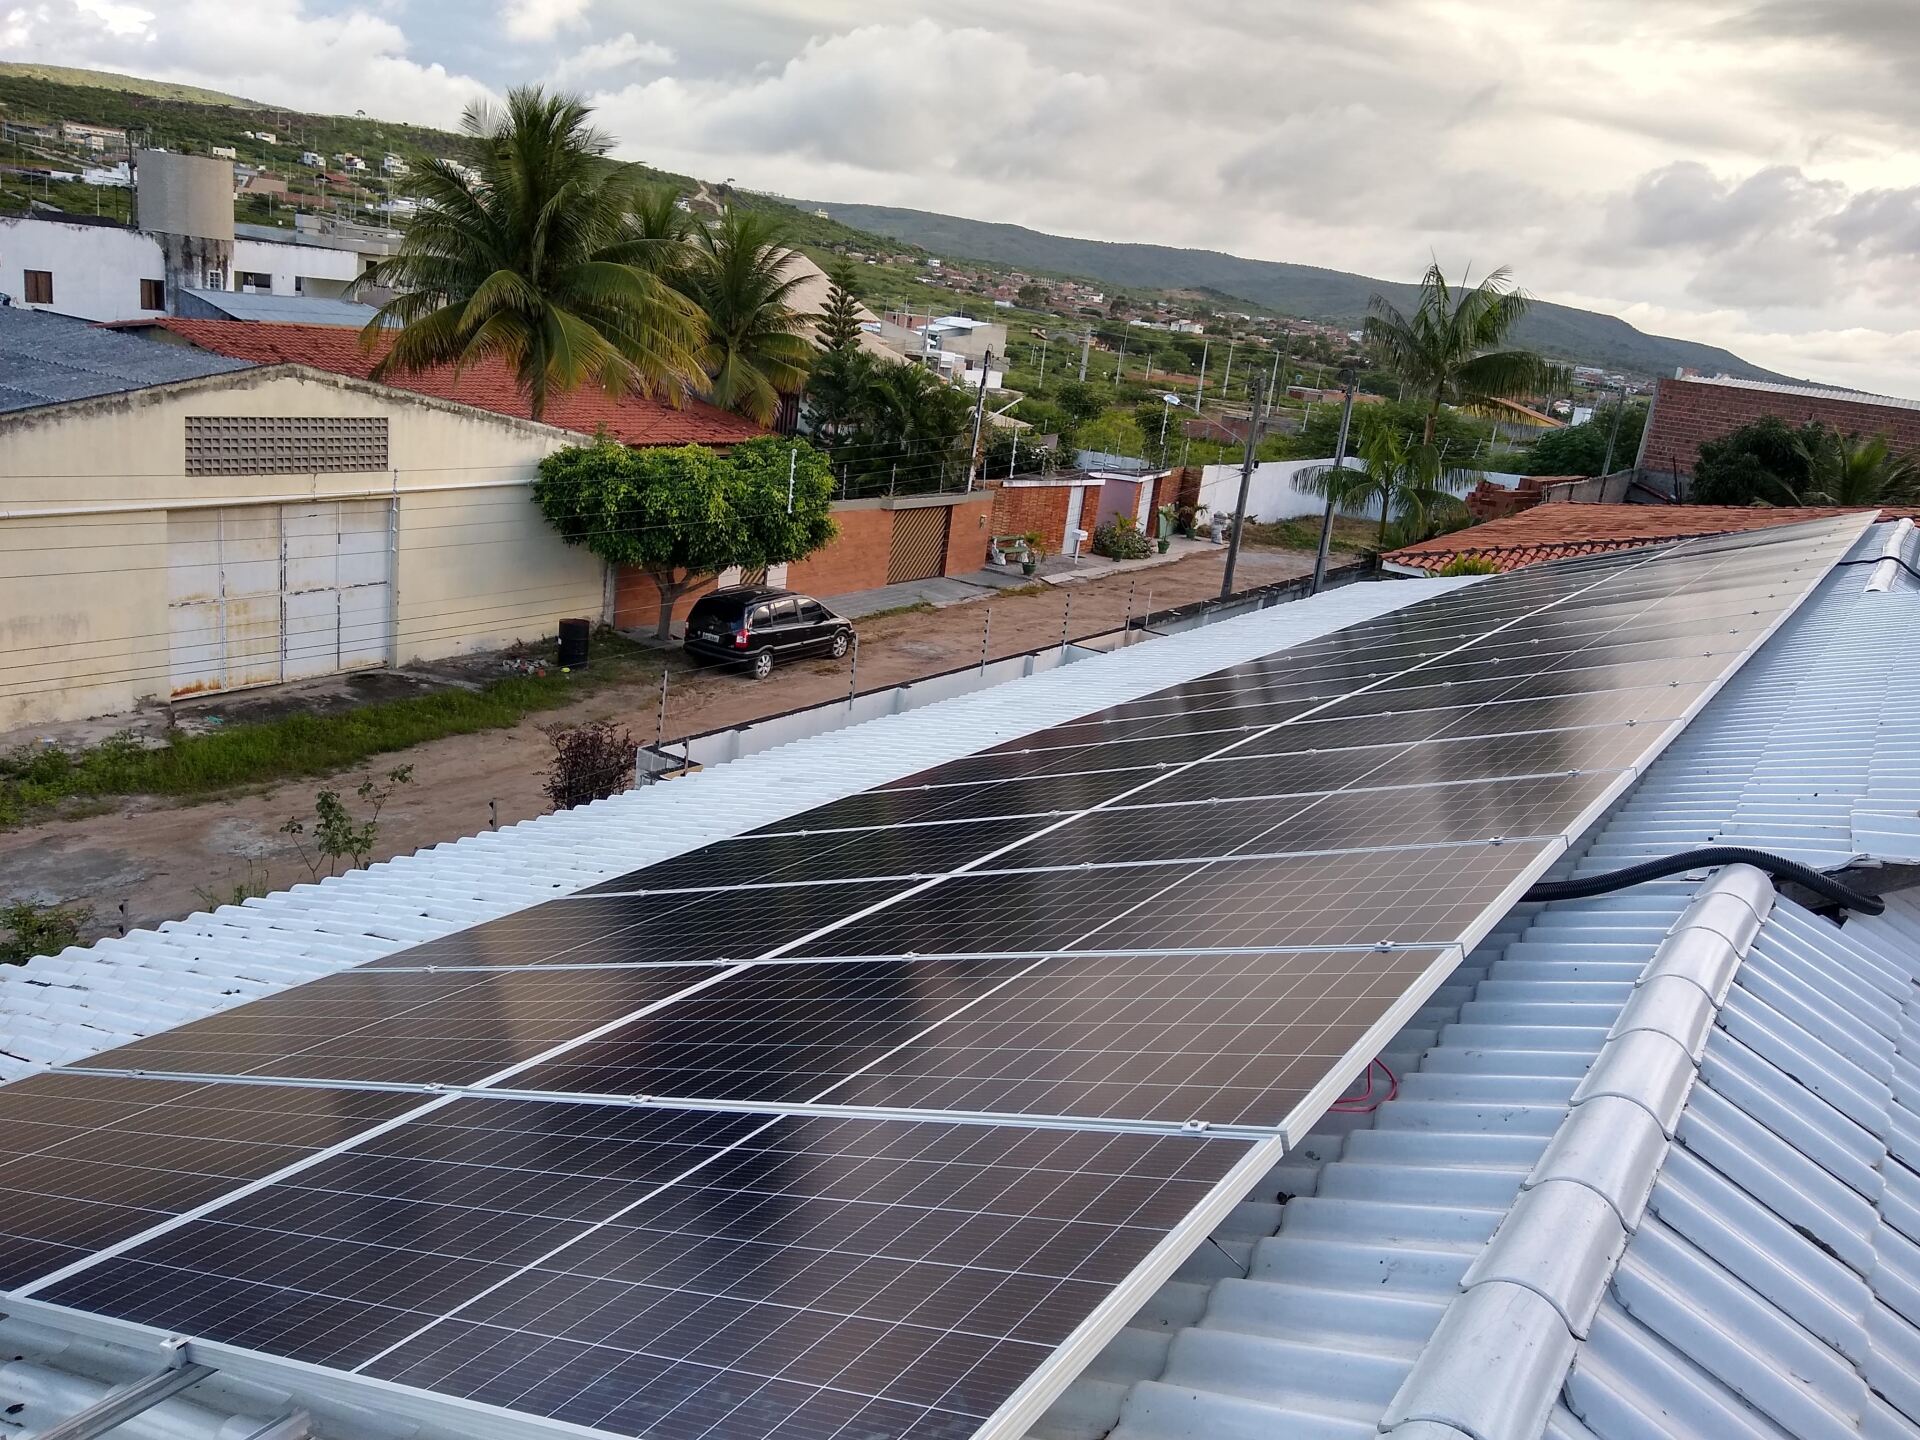 Sistema instalado no municipio de Bezerros-PE. Composto por 68 módulos Solar Fotovoltaico de potência 405Wp. Com plataforma para monitoramento Online.